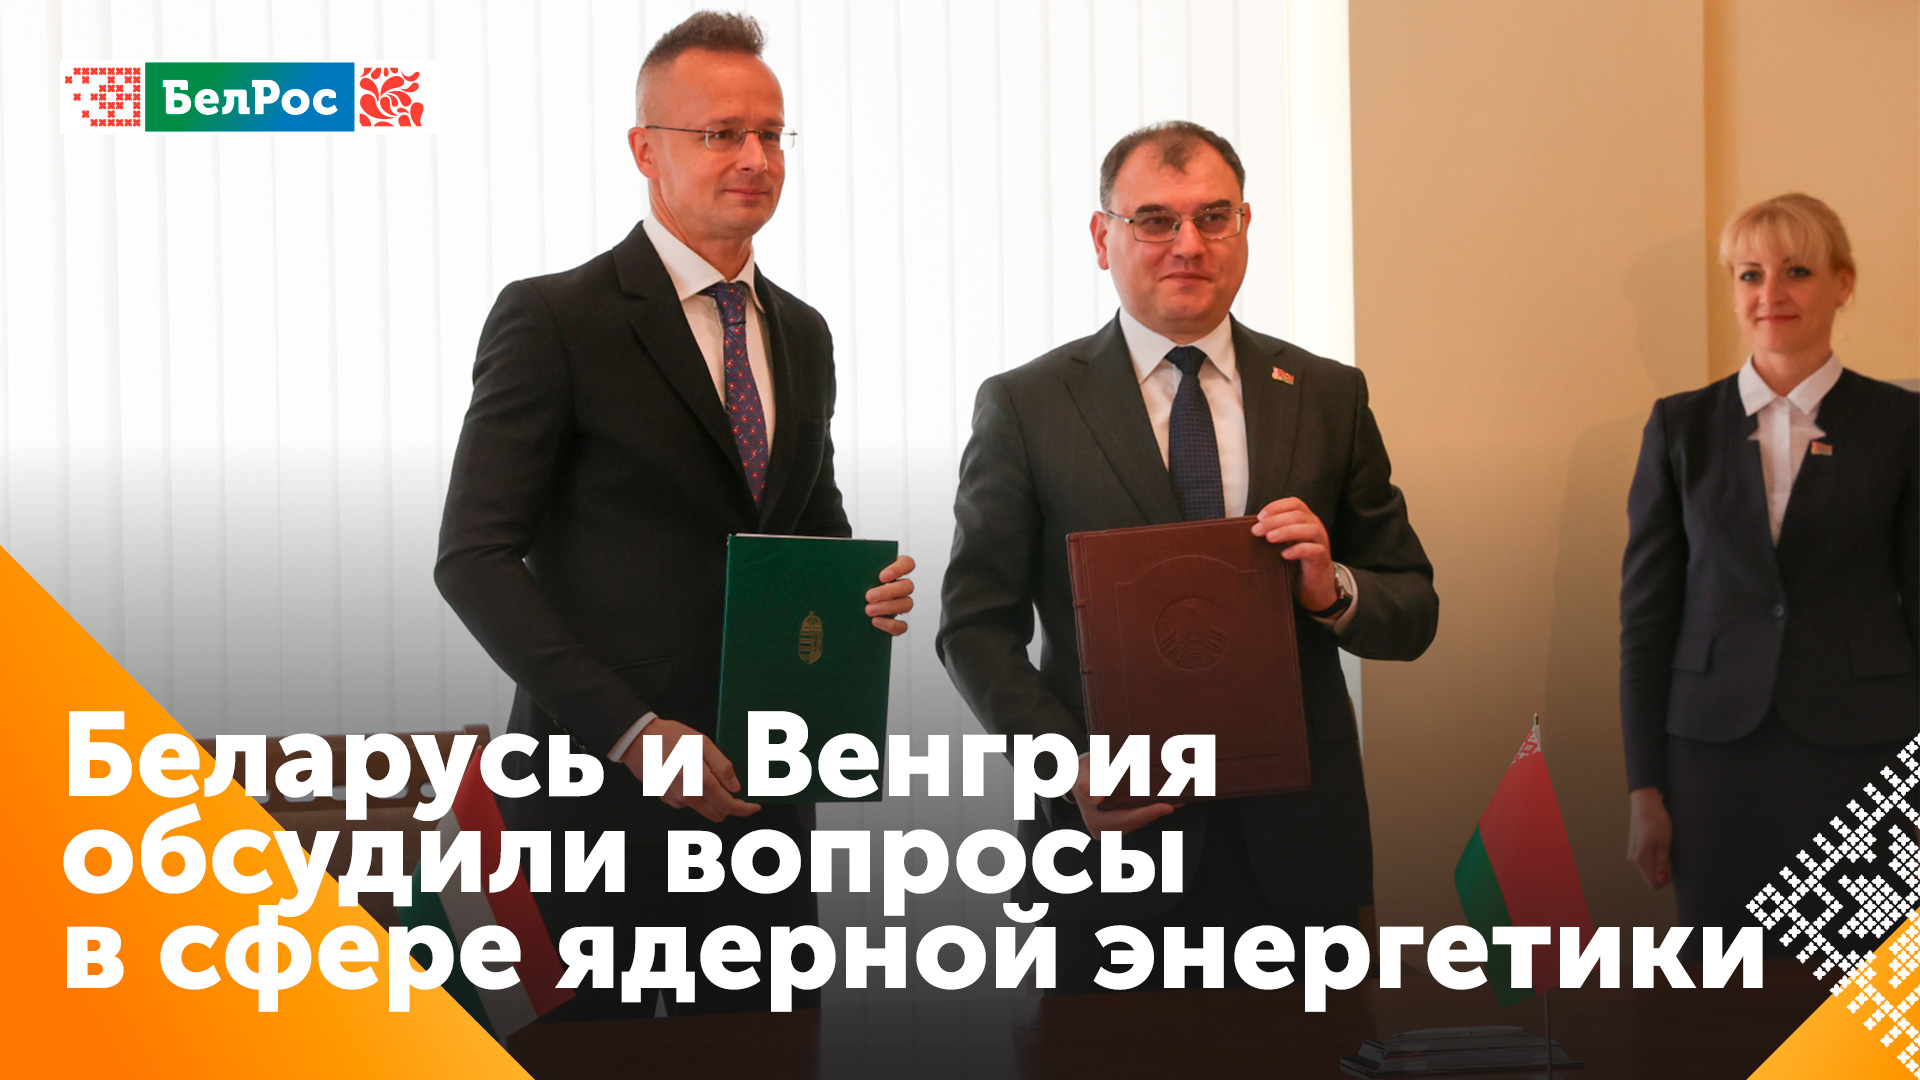 Беларусь и Венгрия углубляют сотрудничество в ядерной энергетике